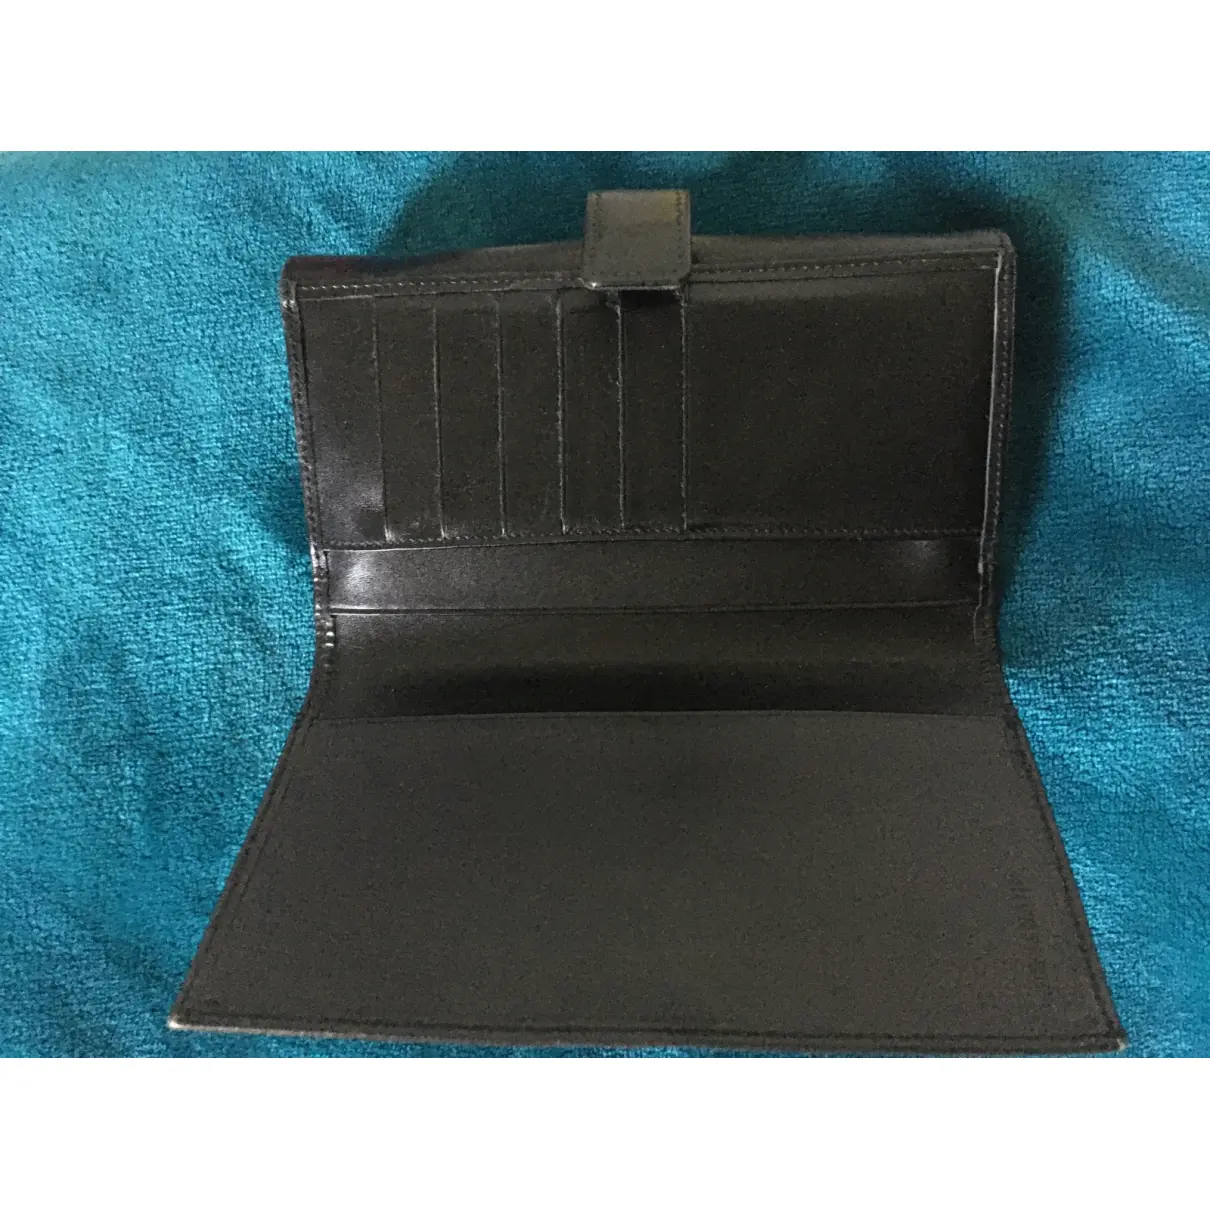 Roseau leather wallet Longchamp